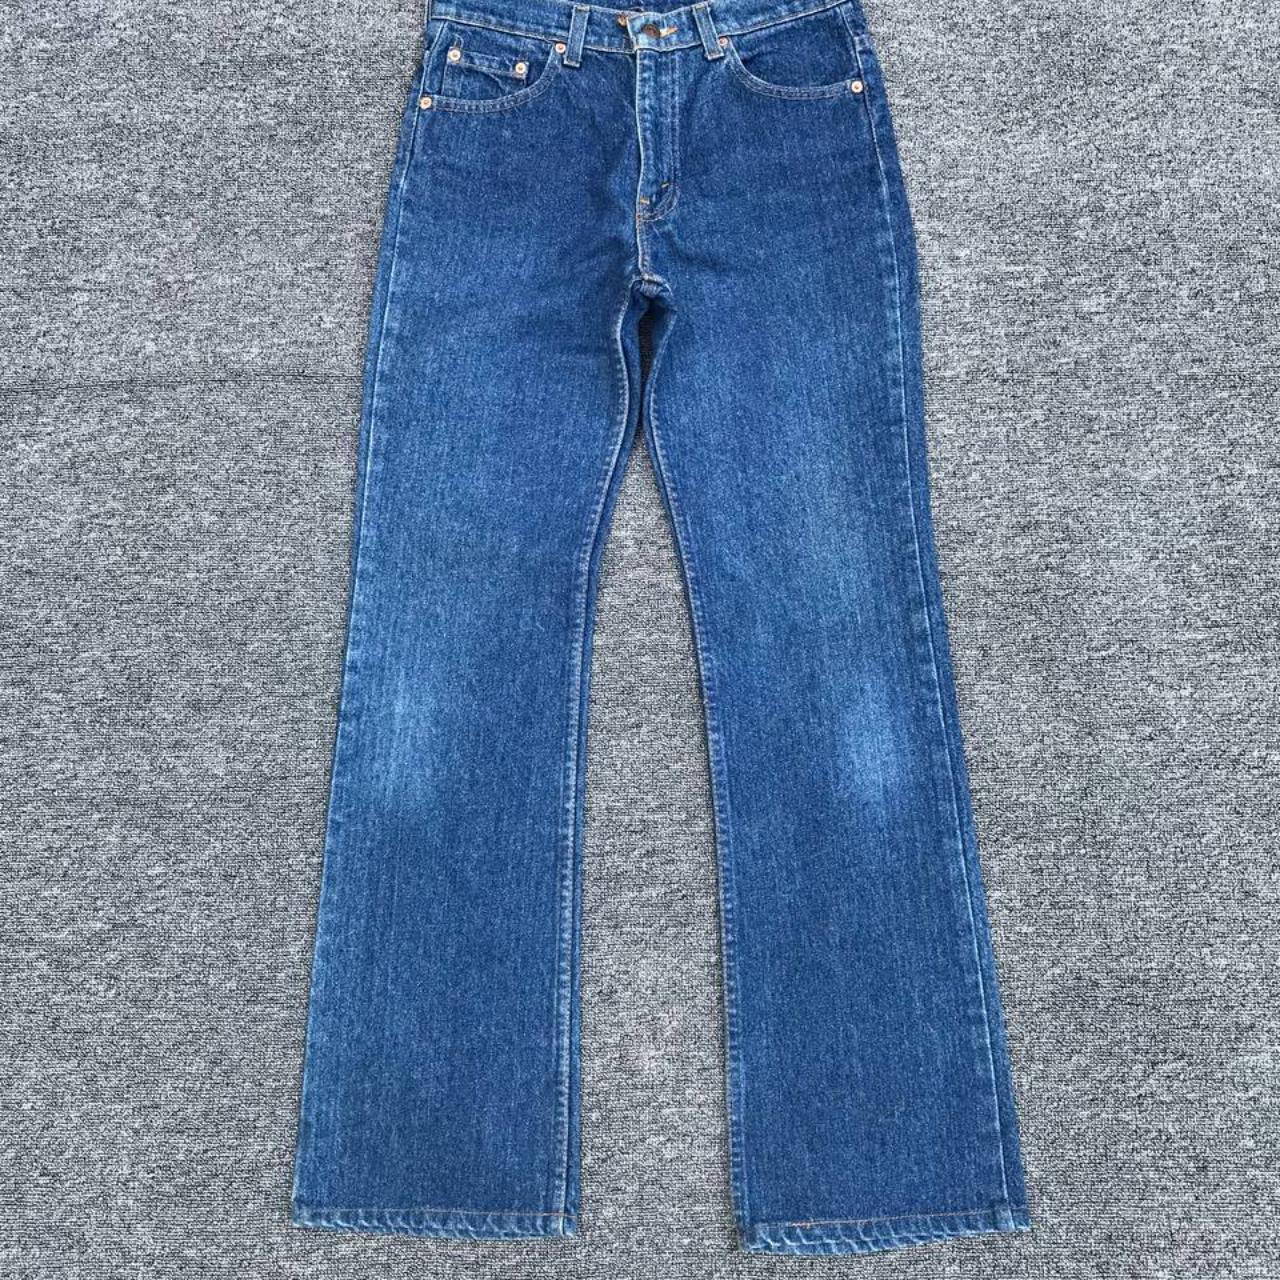 Flared Vintage Levis 517 90s USA made lightwash jean... - Depop